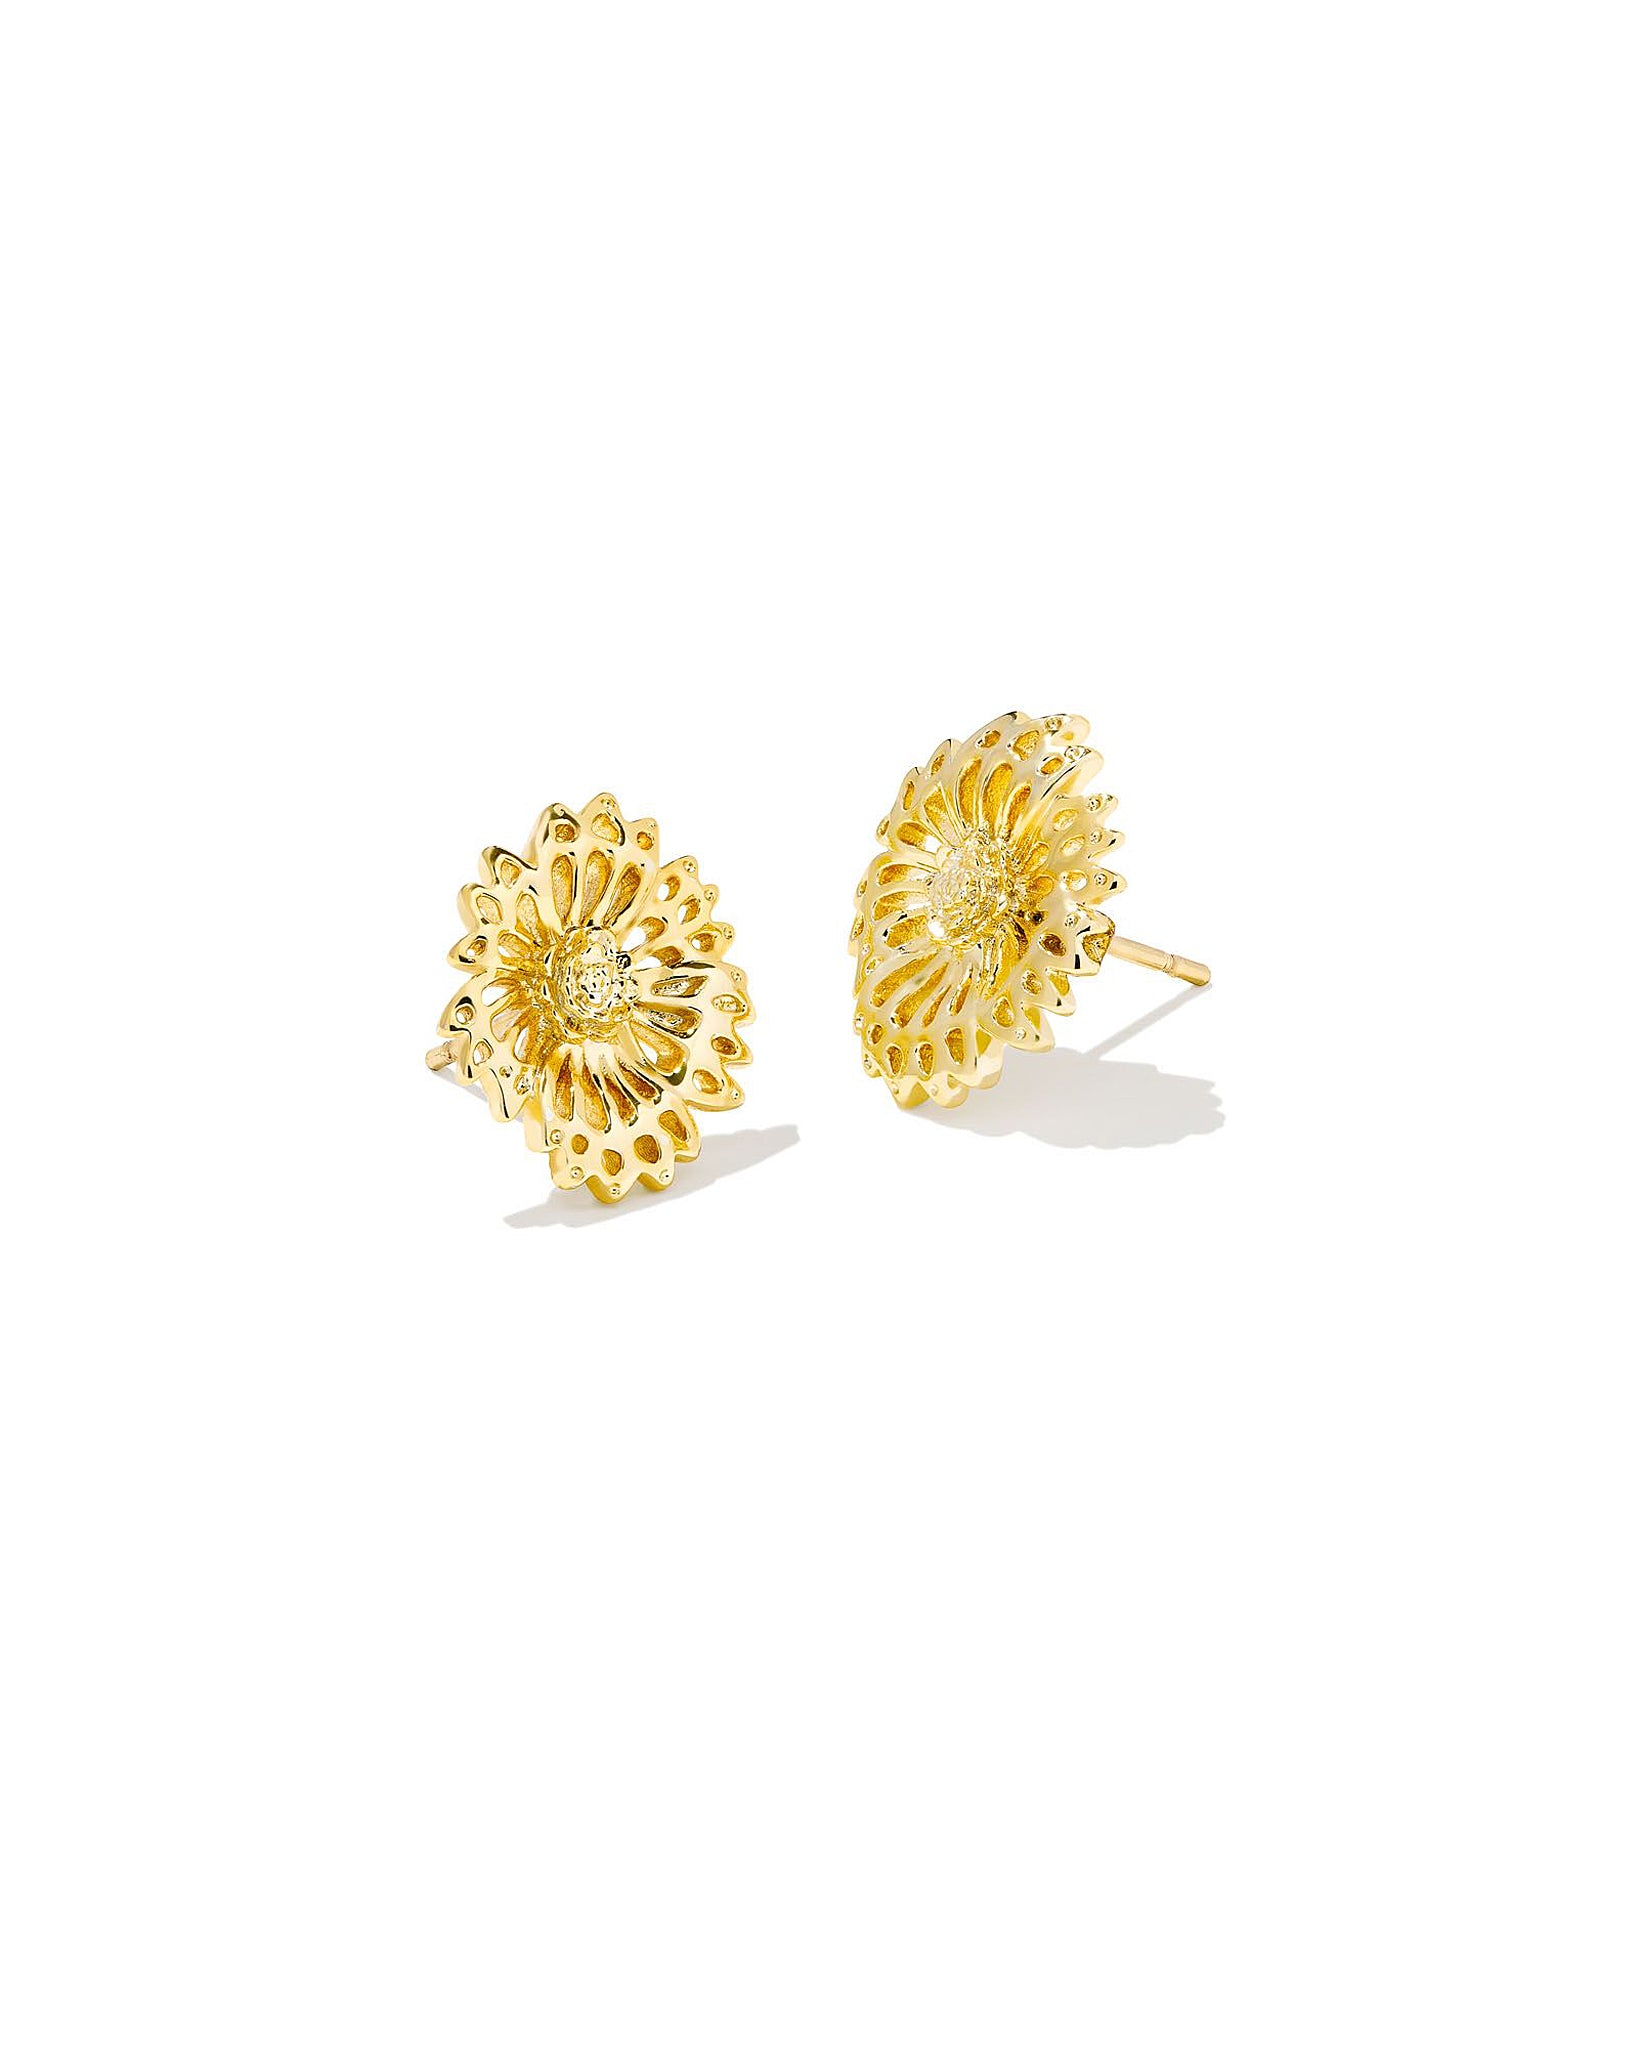 Kendra Scott Brielle Flower Stud Earrings in Gold Plated